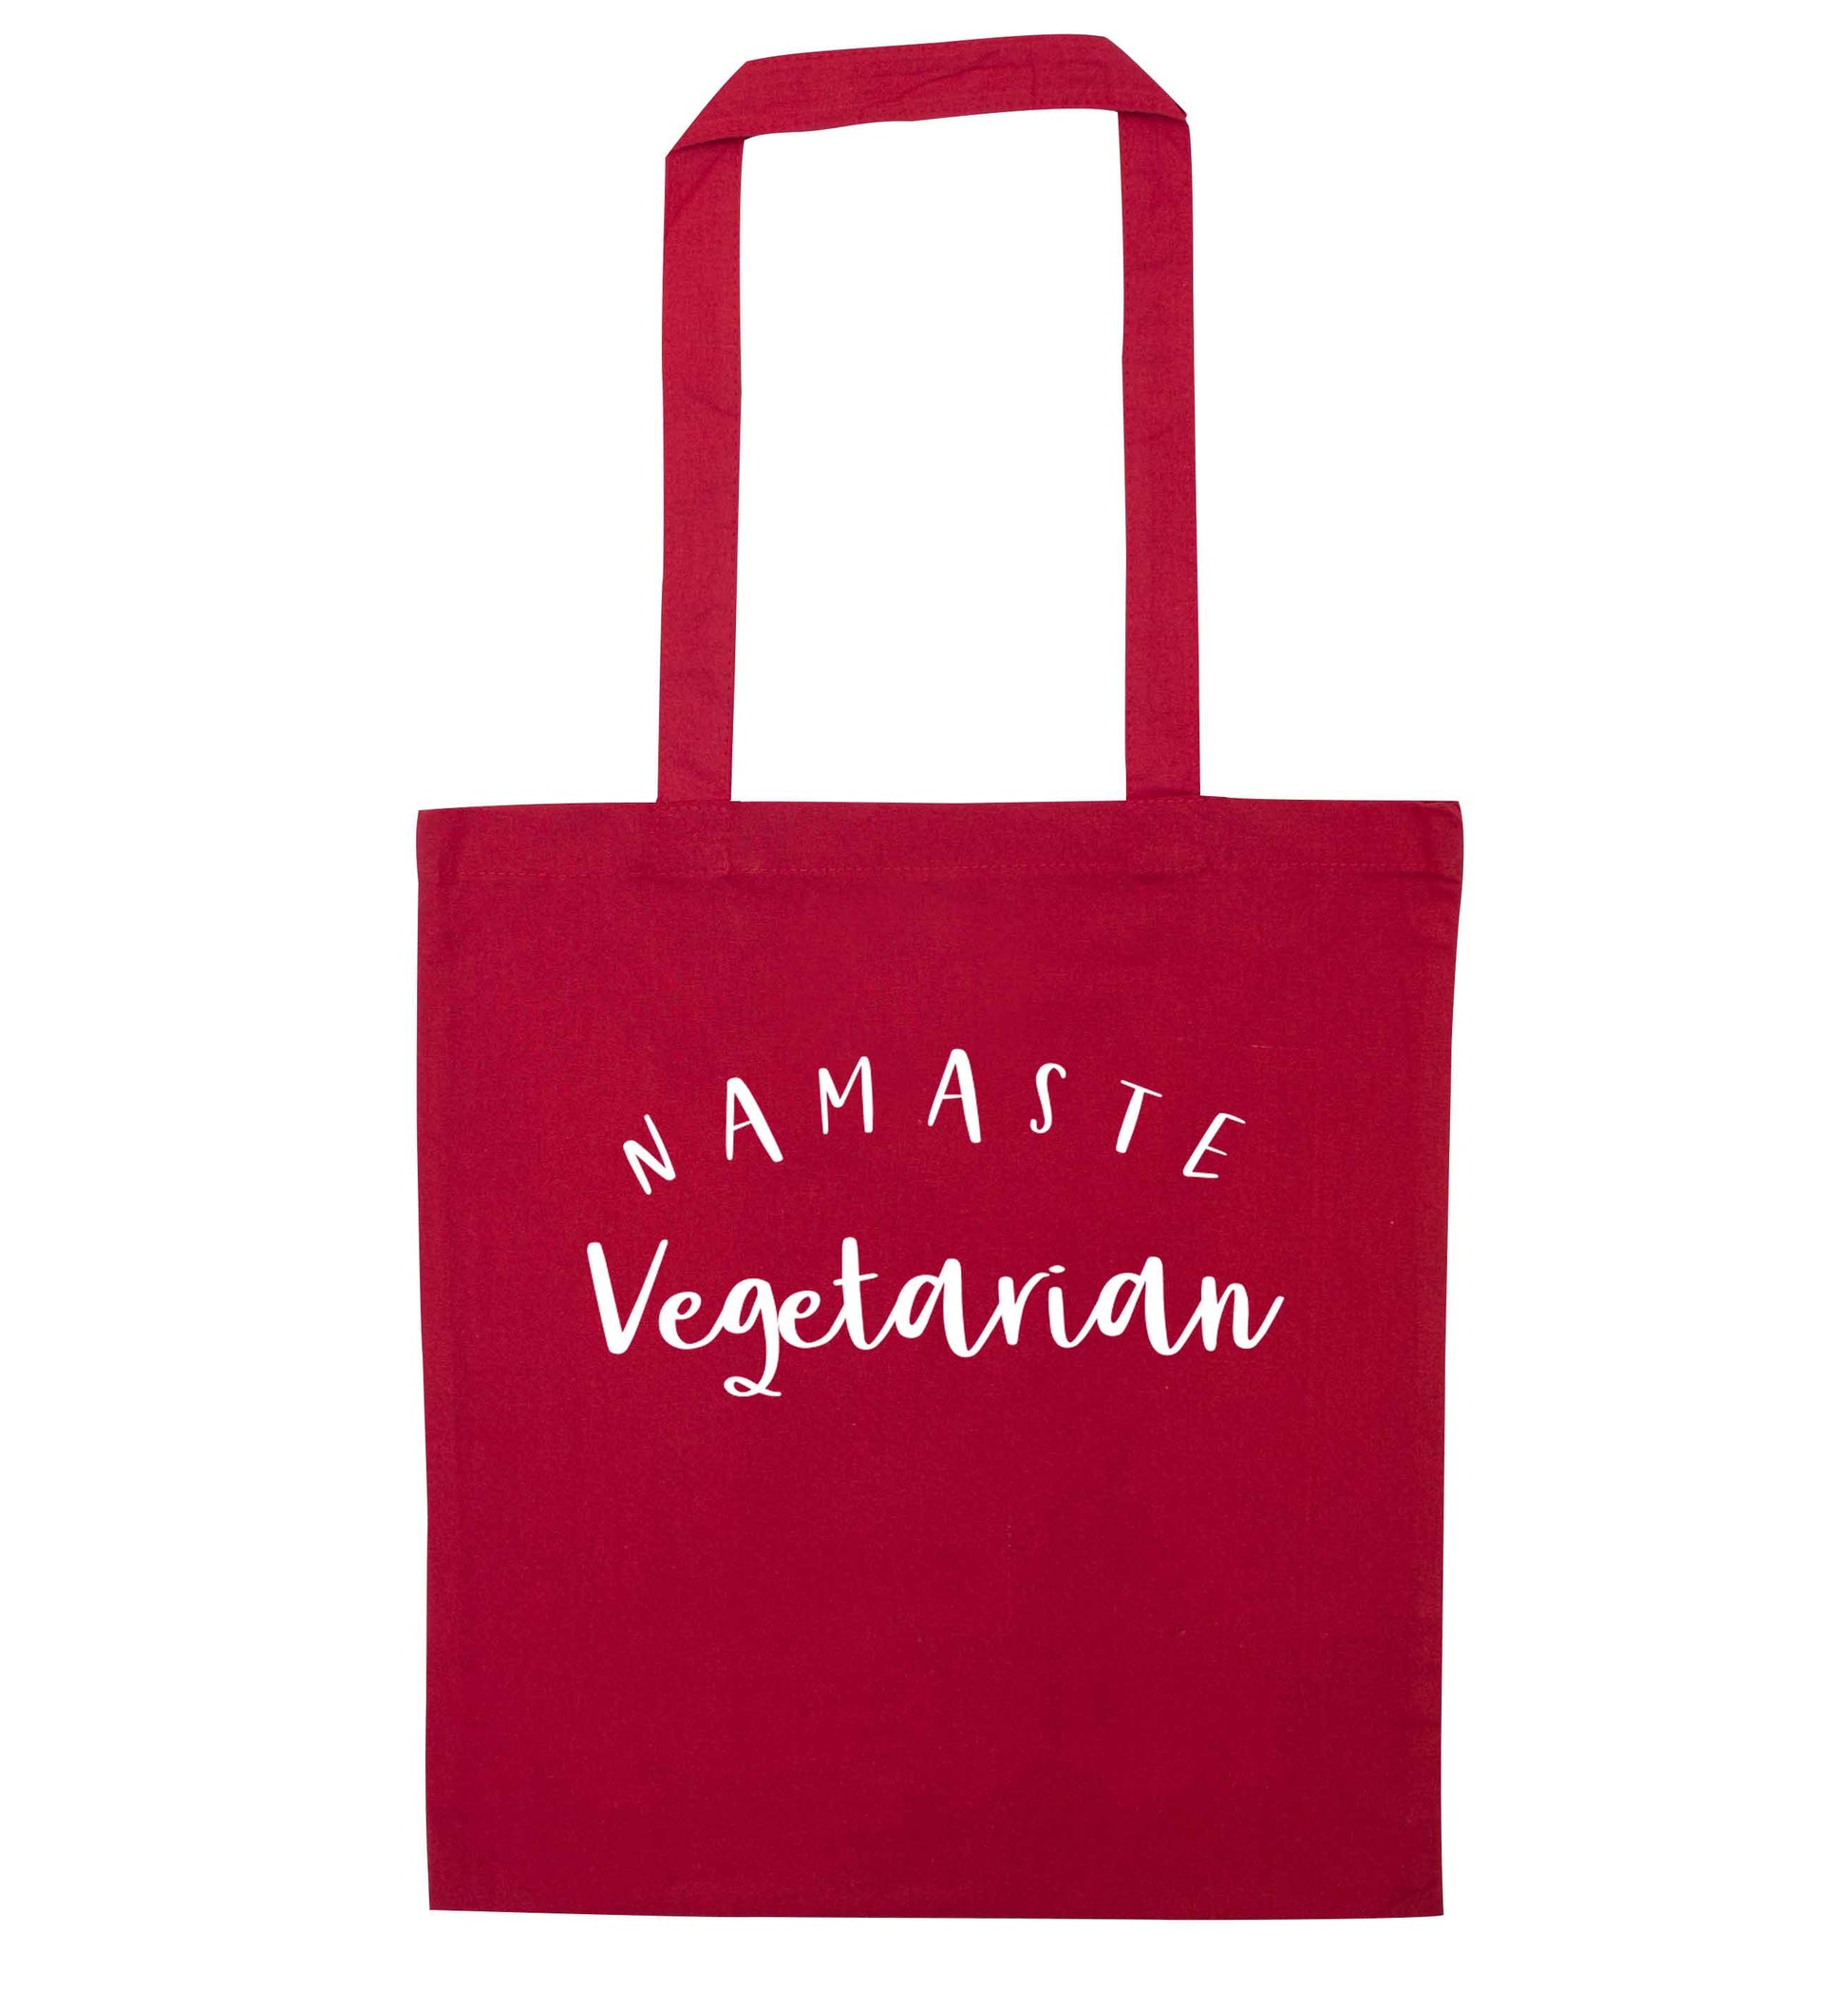 Namaste vegetarian red tote bag